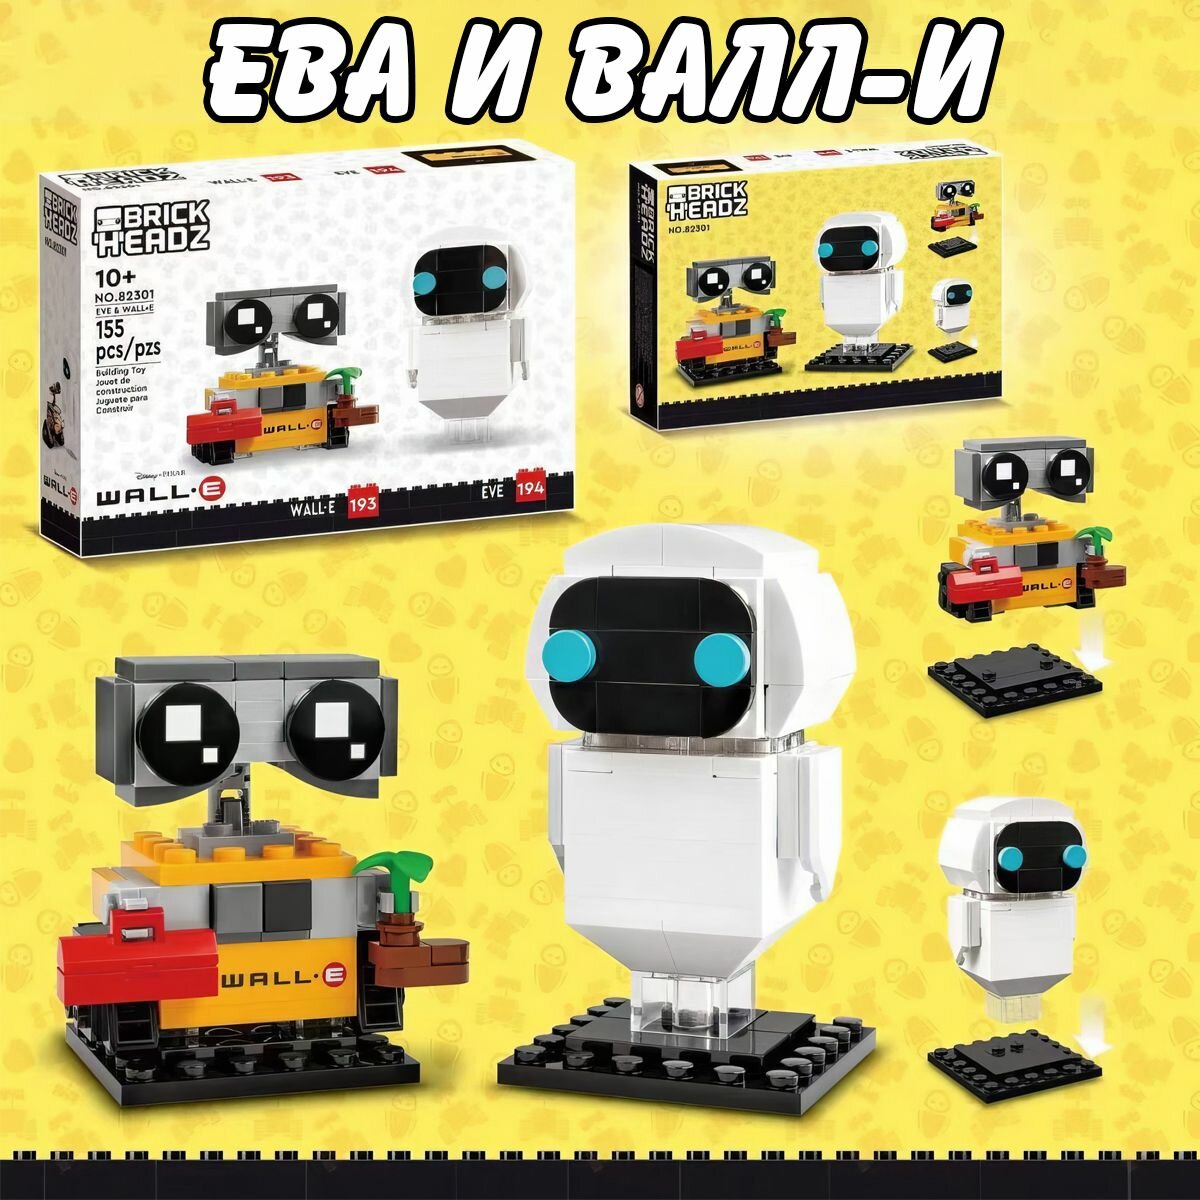 Конструктор Creator Ева и валл-и, 155 деталей / WALL-E конструктор / детские игрушки